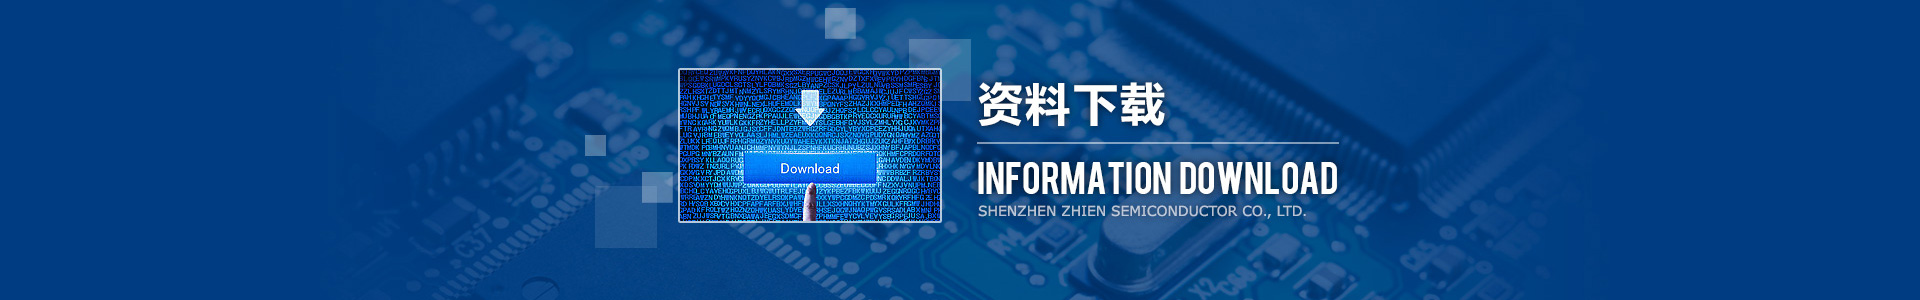 深圳市知恩半導體有限公司，應廣單片機，觸摸芯片，普芯達GF90F0320，MOS電源芯片。